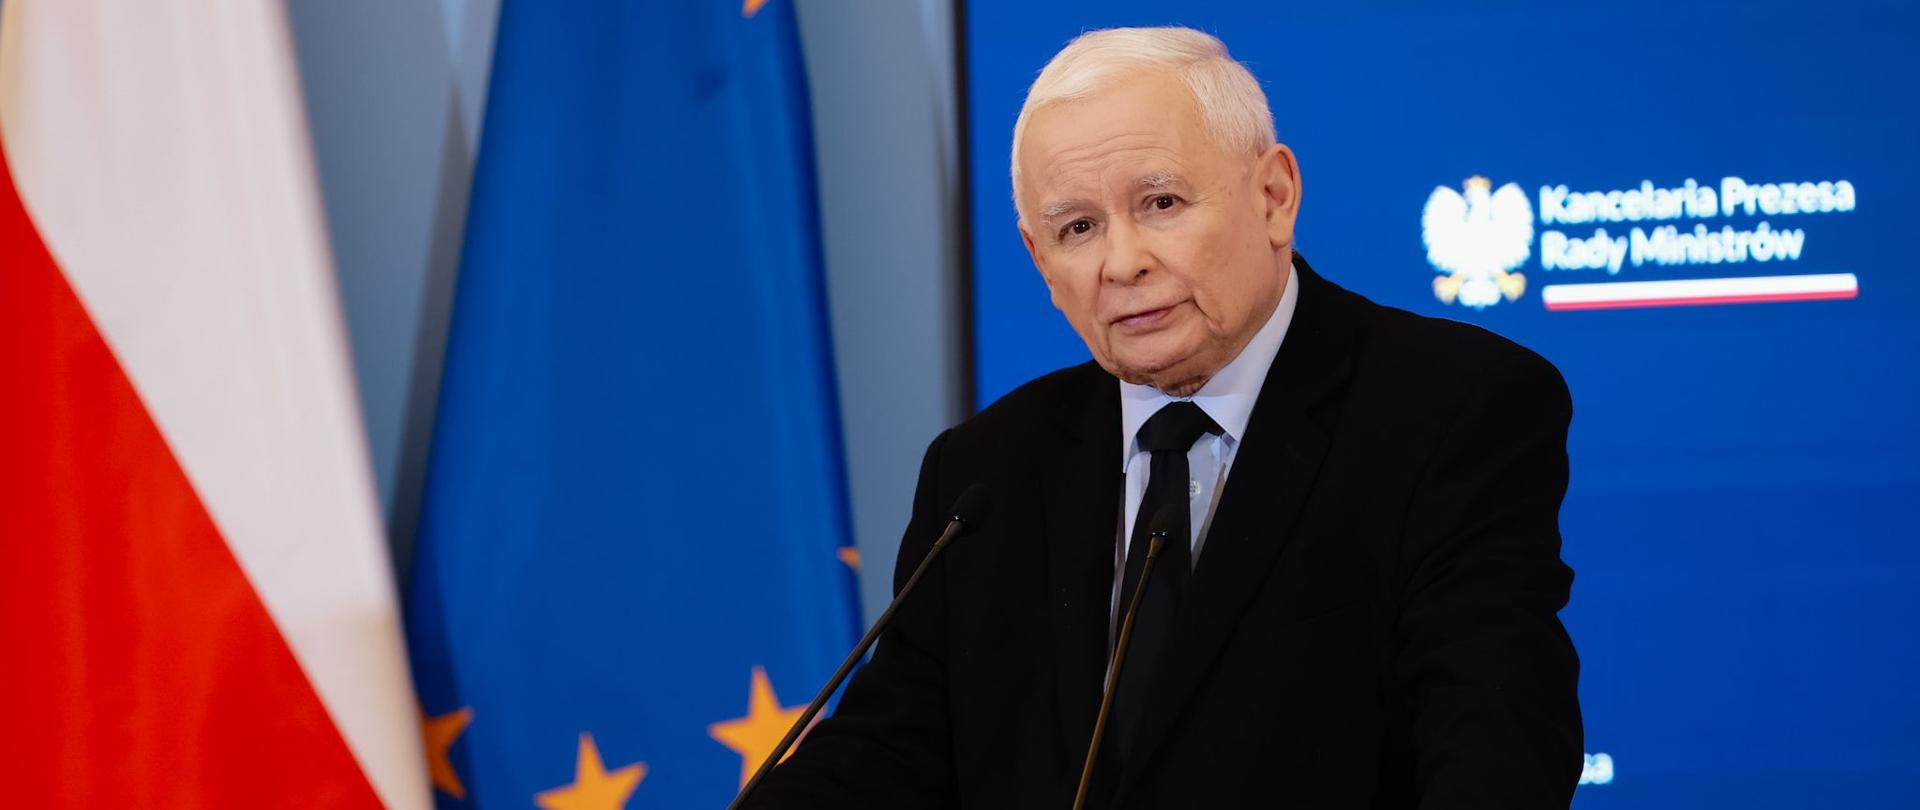 Premier Jarosław Kaczyński przemawia podczas konferencji prasowej po zakończonym posiedzeniu Komitetu Rady Ministrów do spraw Bezpieczeństwa Narodowego i Spraw Obronnych w Kancelarii Prezesa Rady Ministrów.